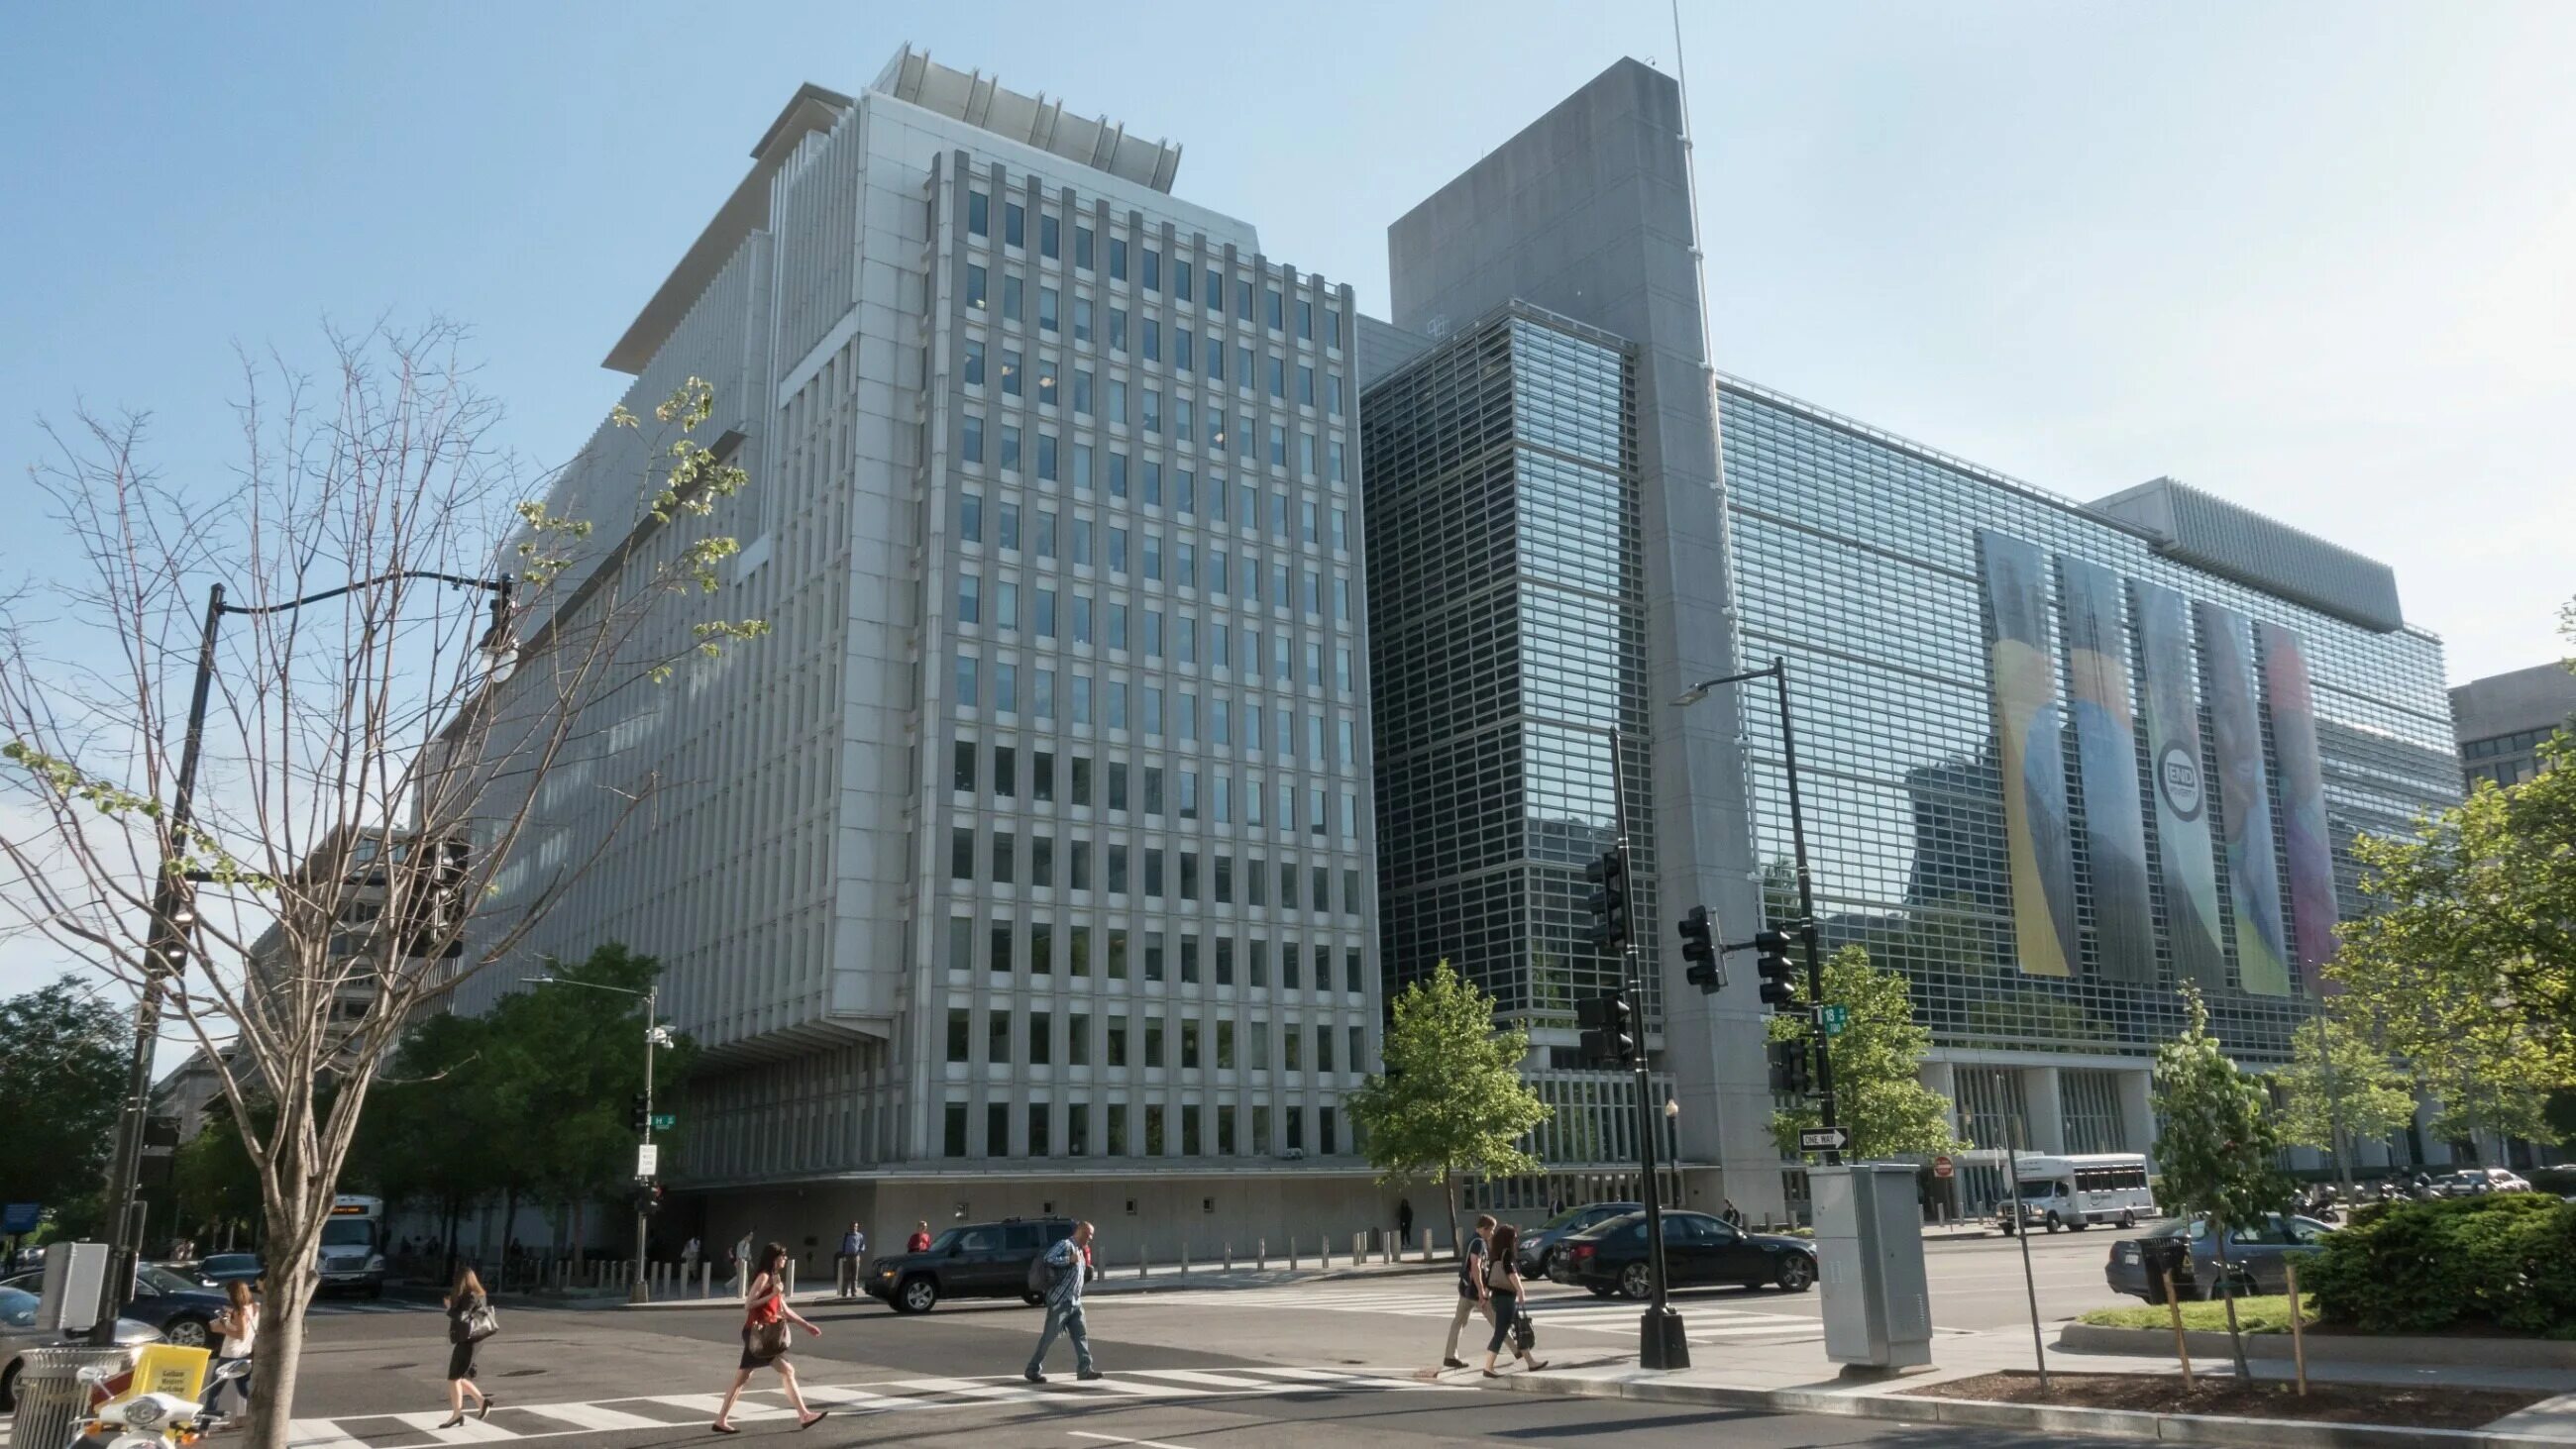 Всемирного банка (the World Bank). Всемирный банк Вашингтон. Группа Всемирного банка штаб квартира. Штаб-квартира Всемирного банка в Вашингтоне.